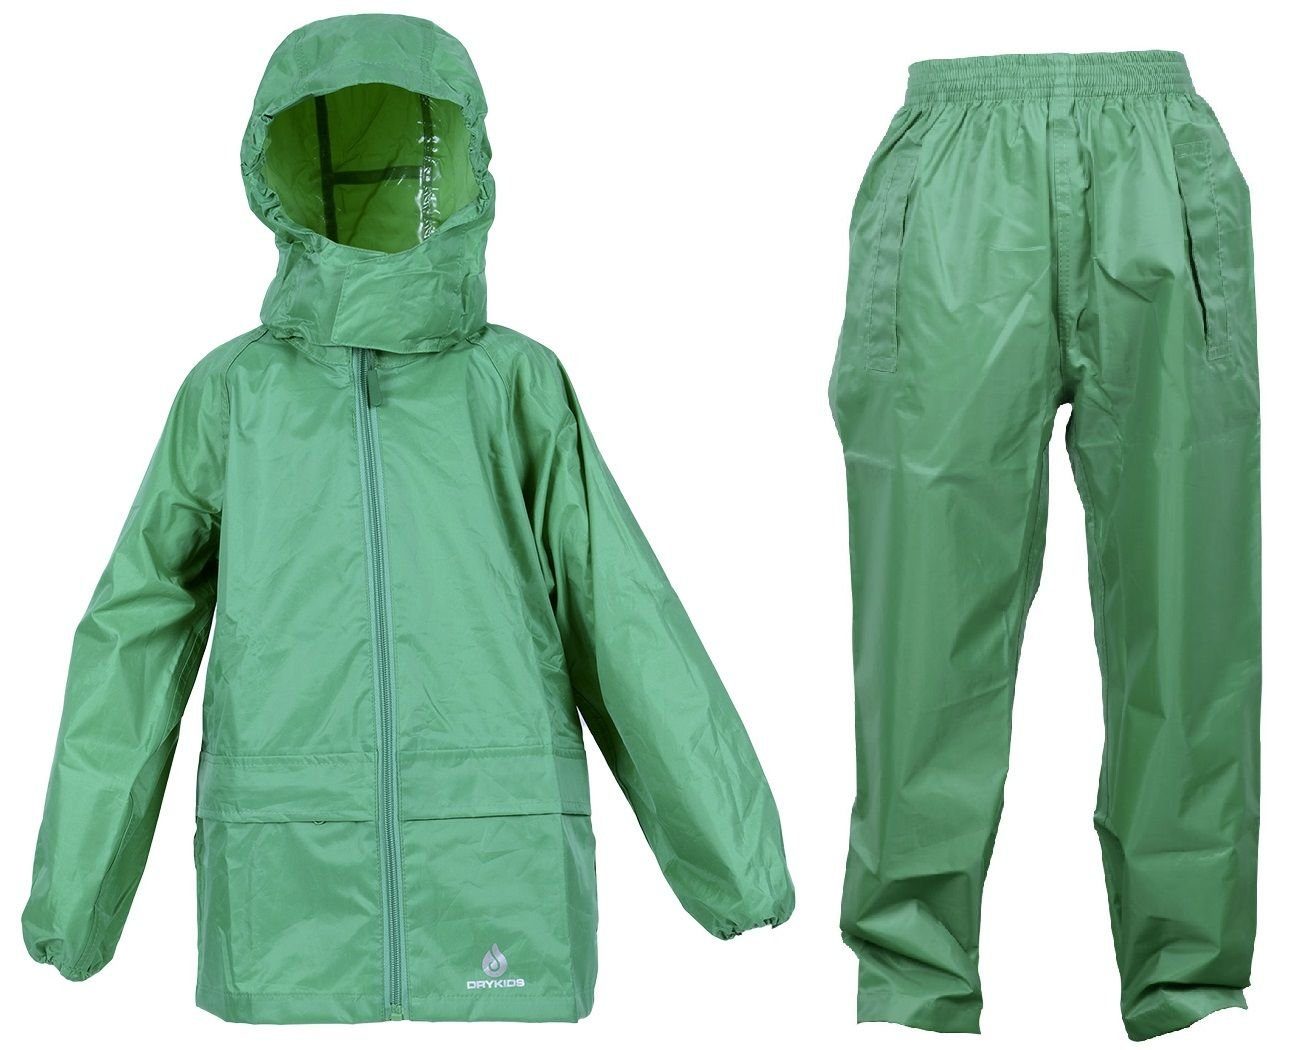 DRY KIDS Regenanzug (1-tlg), Kinder Regenanzug-Set, Grün reflektierende Regenbekleidung Wasserdichtes